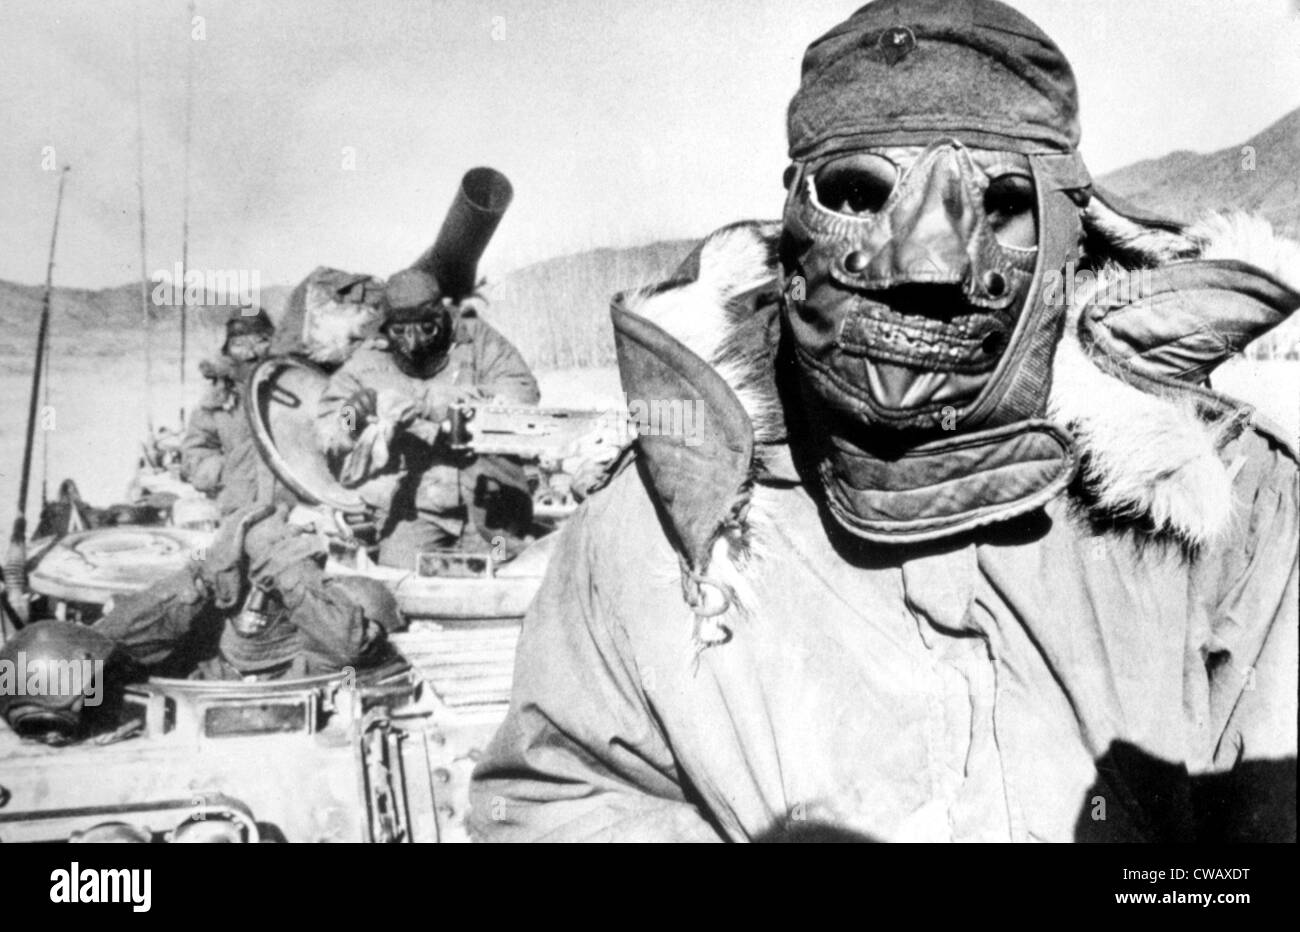 Guerre de Corée : des soldats américains, l'hiver, la Corée, 1951.. Avec la permission de la CSU : Archives / Everett Collection Banque D'Images